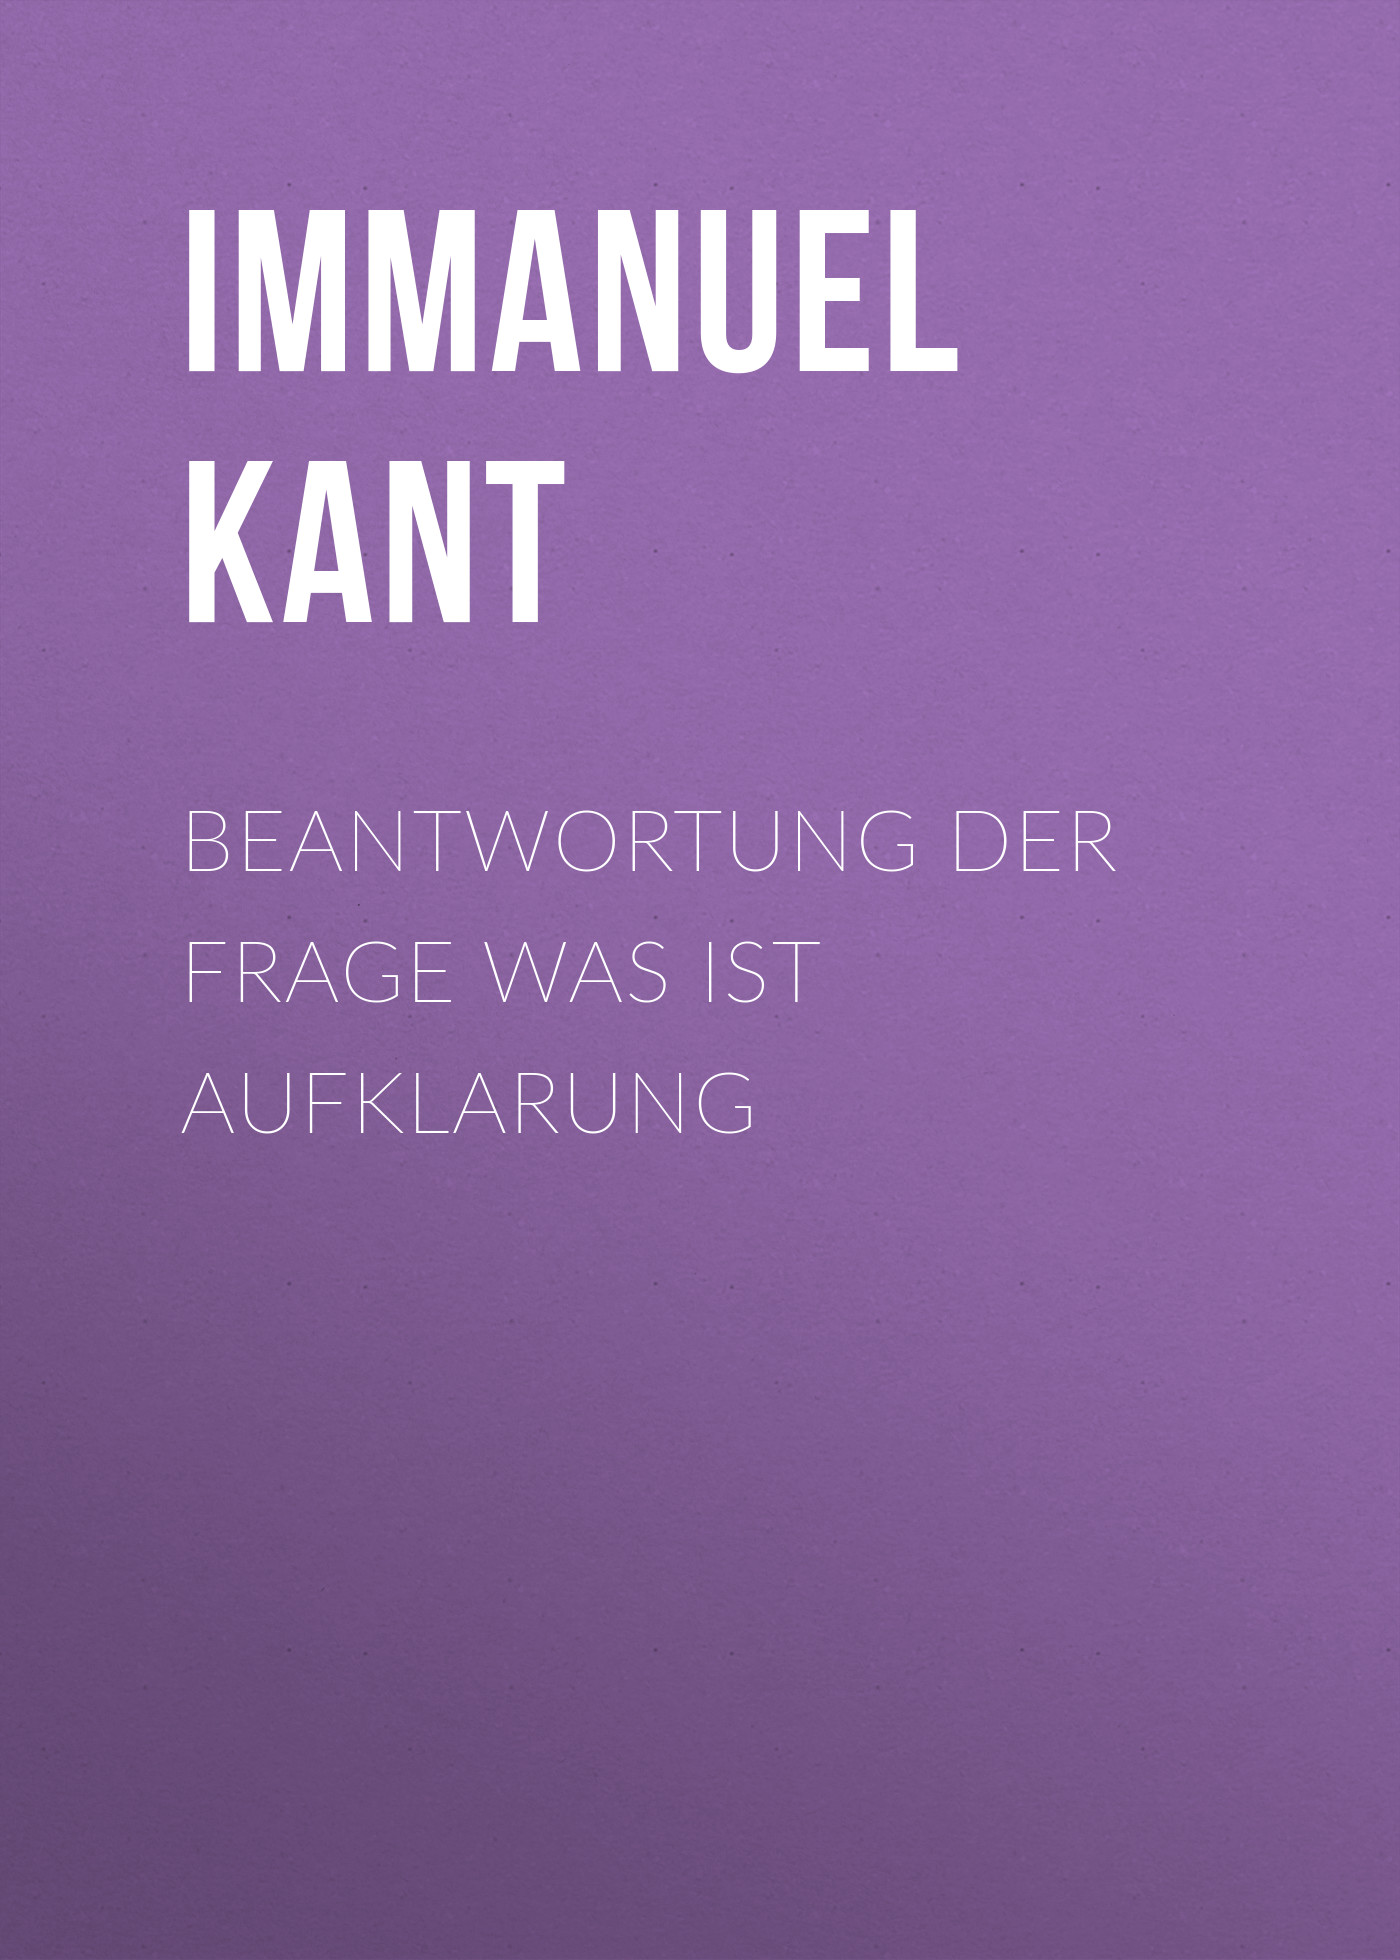 Книга Beantwortung der Frage Was ist Aufklarung из серии , созданная Immanuel Kant, может относится к жанру Зарубежная классика. Стоимость электронной книги Beantwortung der Frage Was ist Aufklarung с идентификатором 48631604 составляет 0 руб.